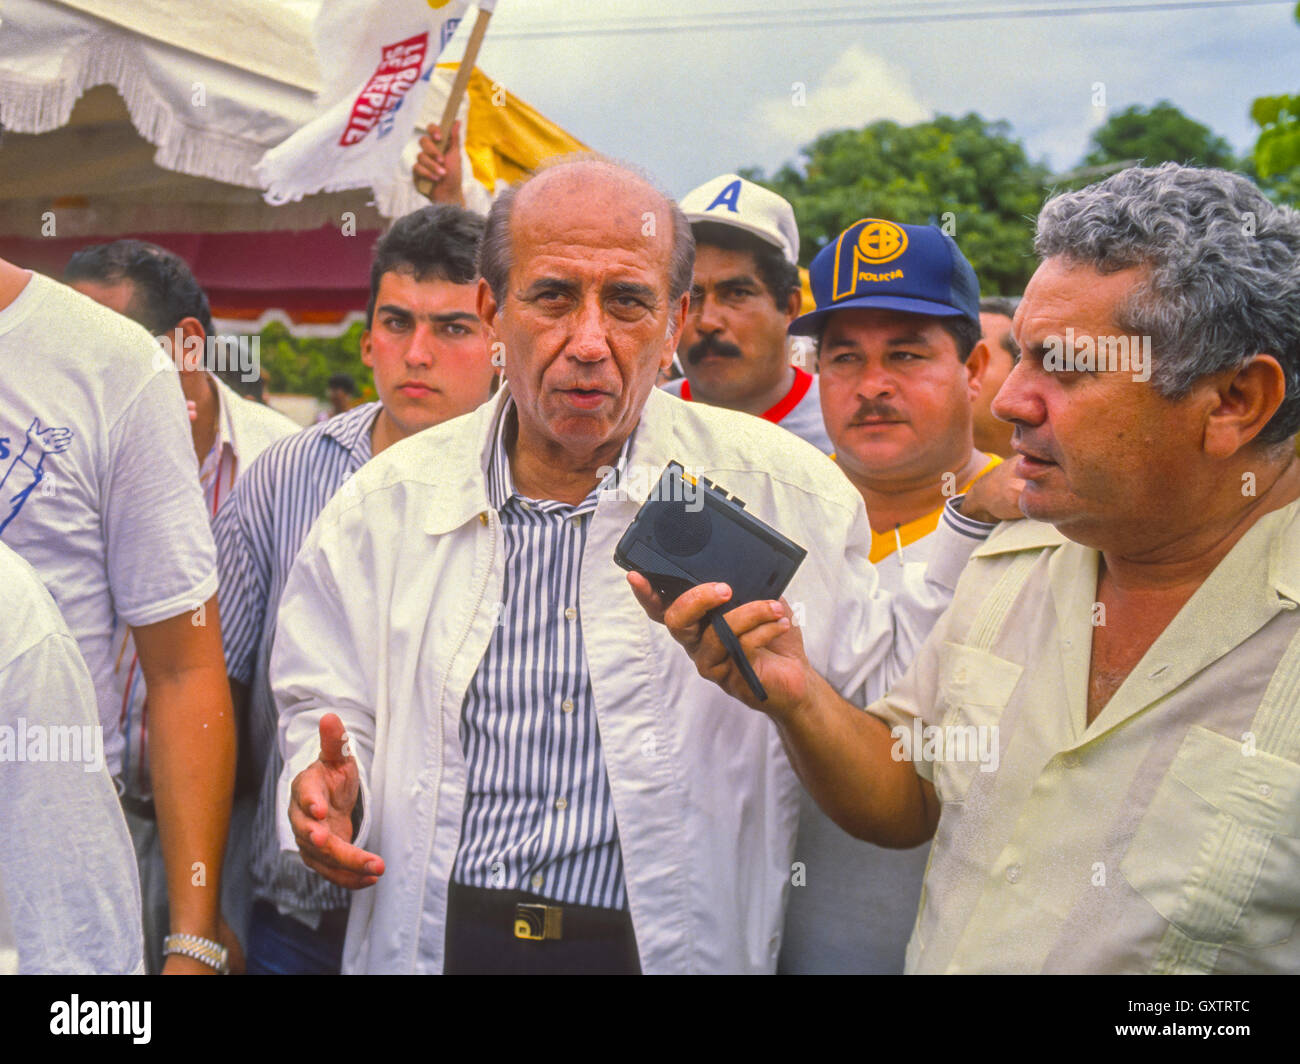 CIUDAD GUAYANA, VENEZUELA - Presidential candidate Carlos Andres Perez campaigning. October 1988 Stock Photo